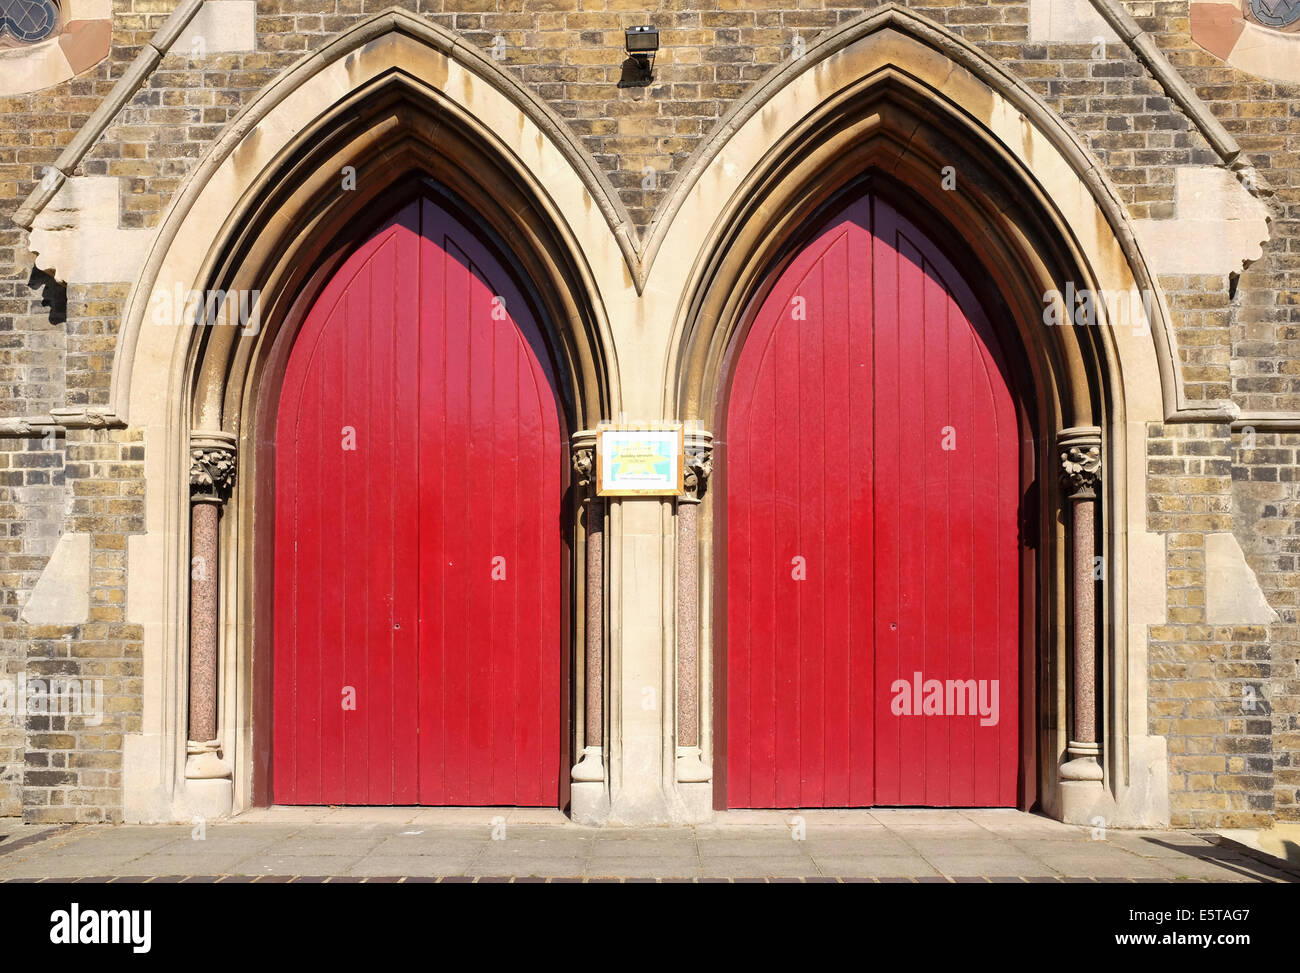 Victoria Baptist Church red doors in Deal, Kent, UK Stock Photo